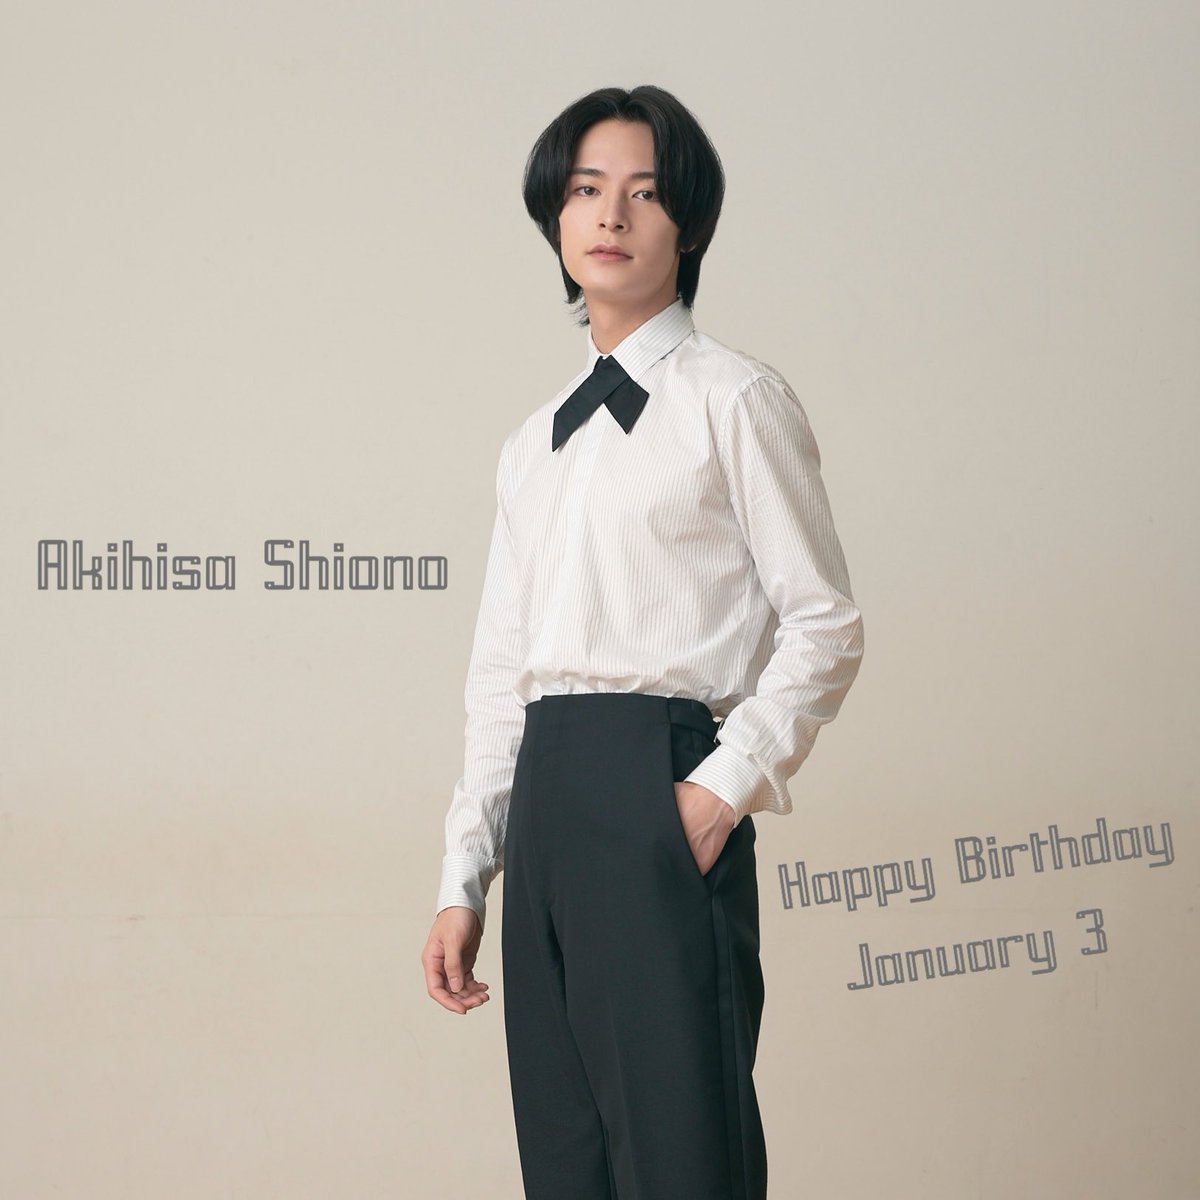 ／
Happy Birthday!!!
＼

#HappyBirthday_Akihisa
#January3 
#塩野瑛久